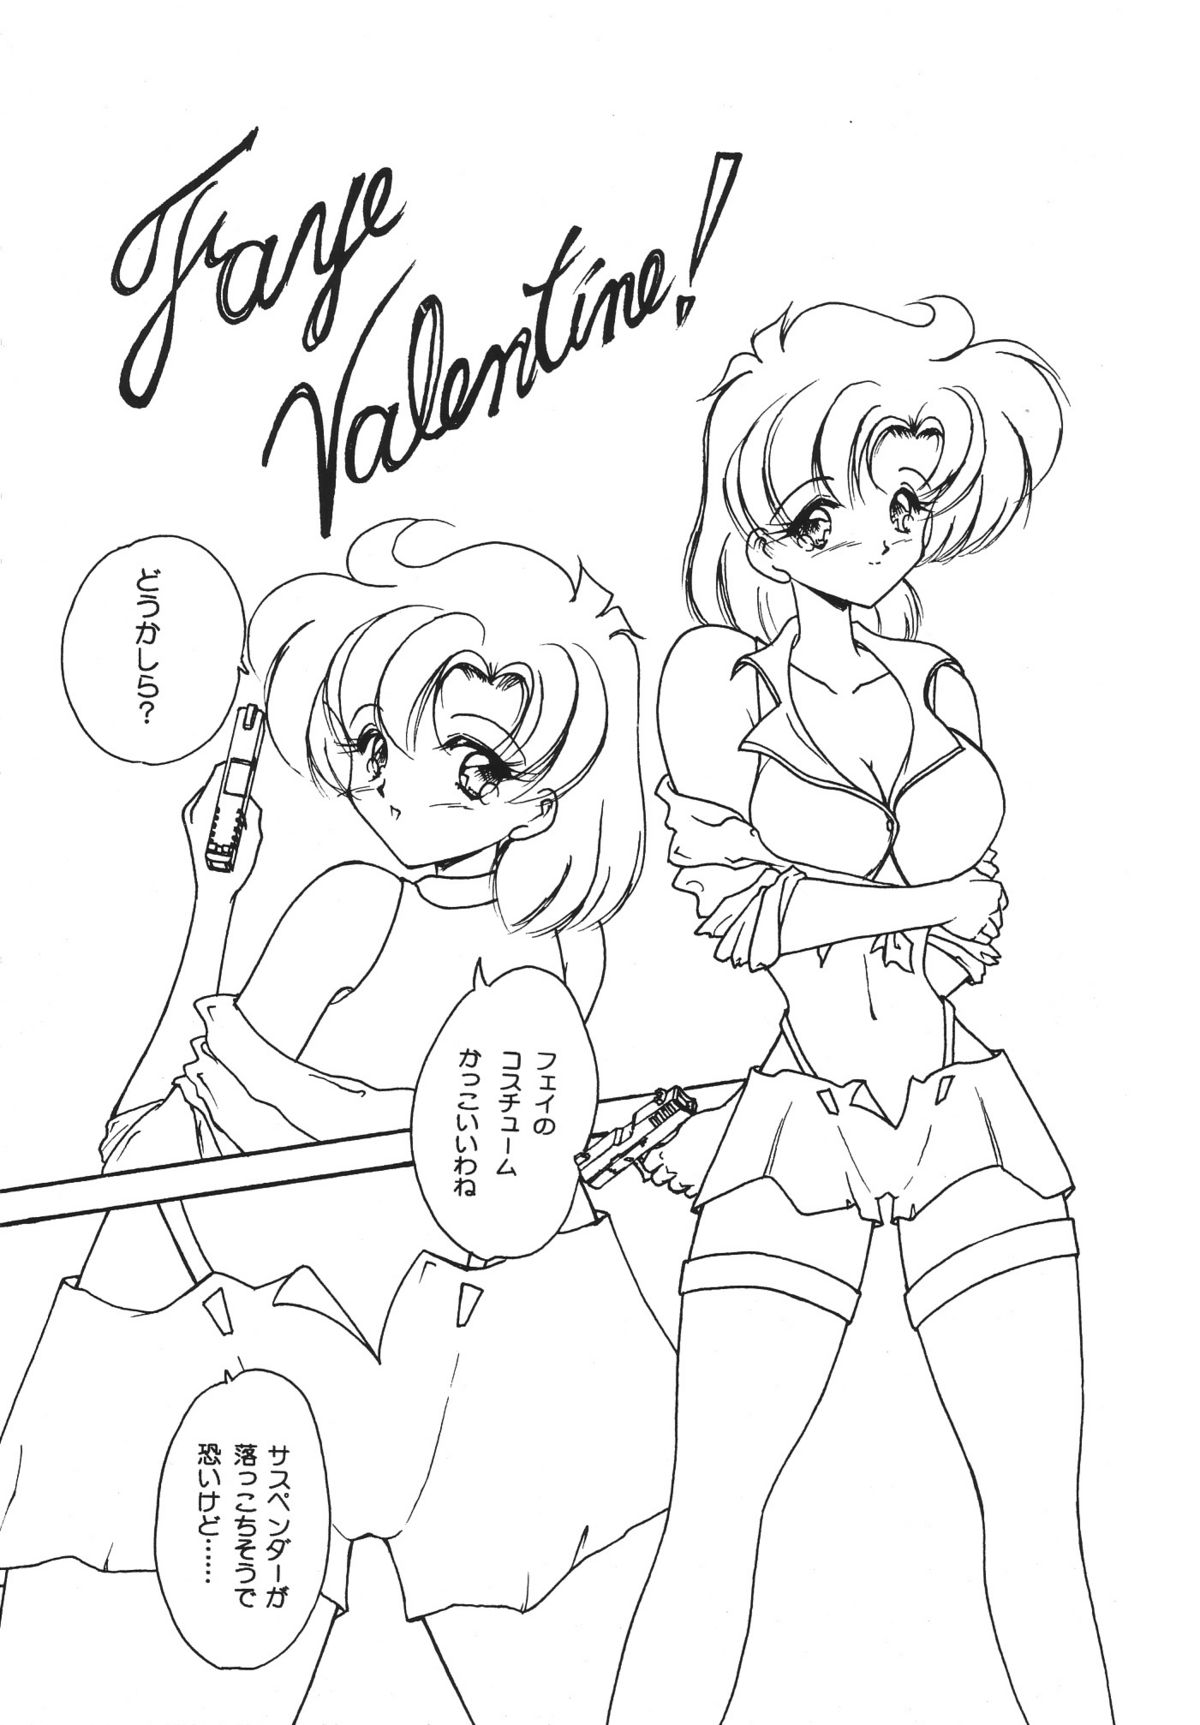 [Seishun No Nigirikobushi!] Favorite Visions 2 (Sailor Moon, AIKa) page 25 full